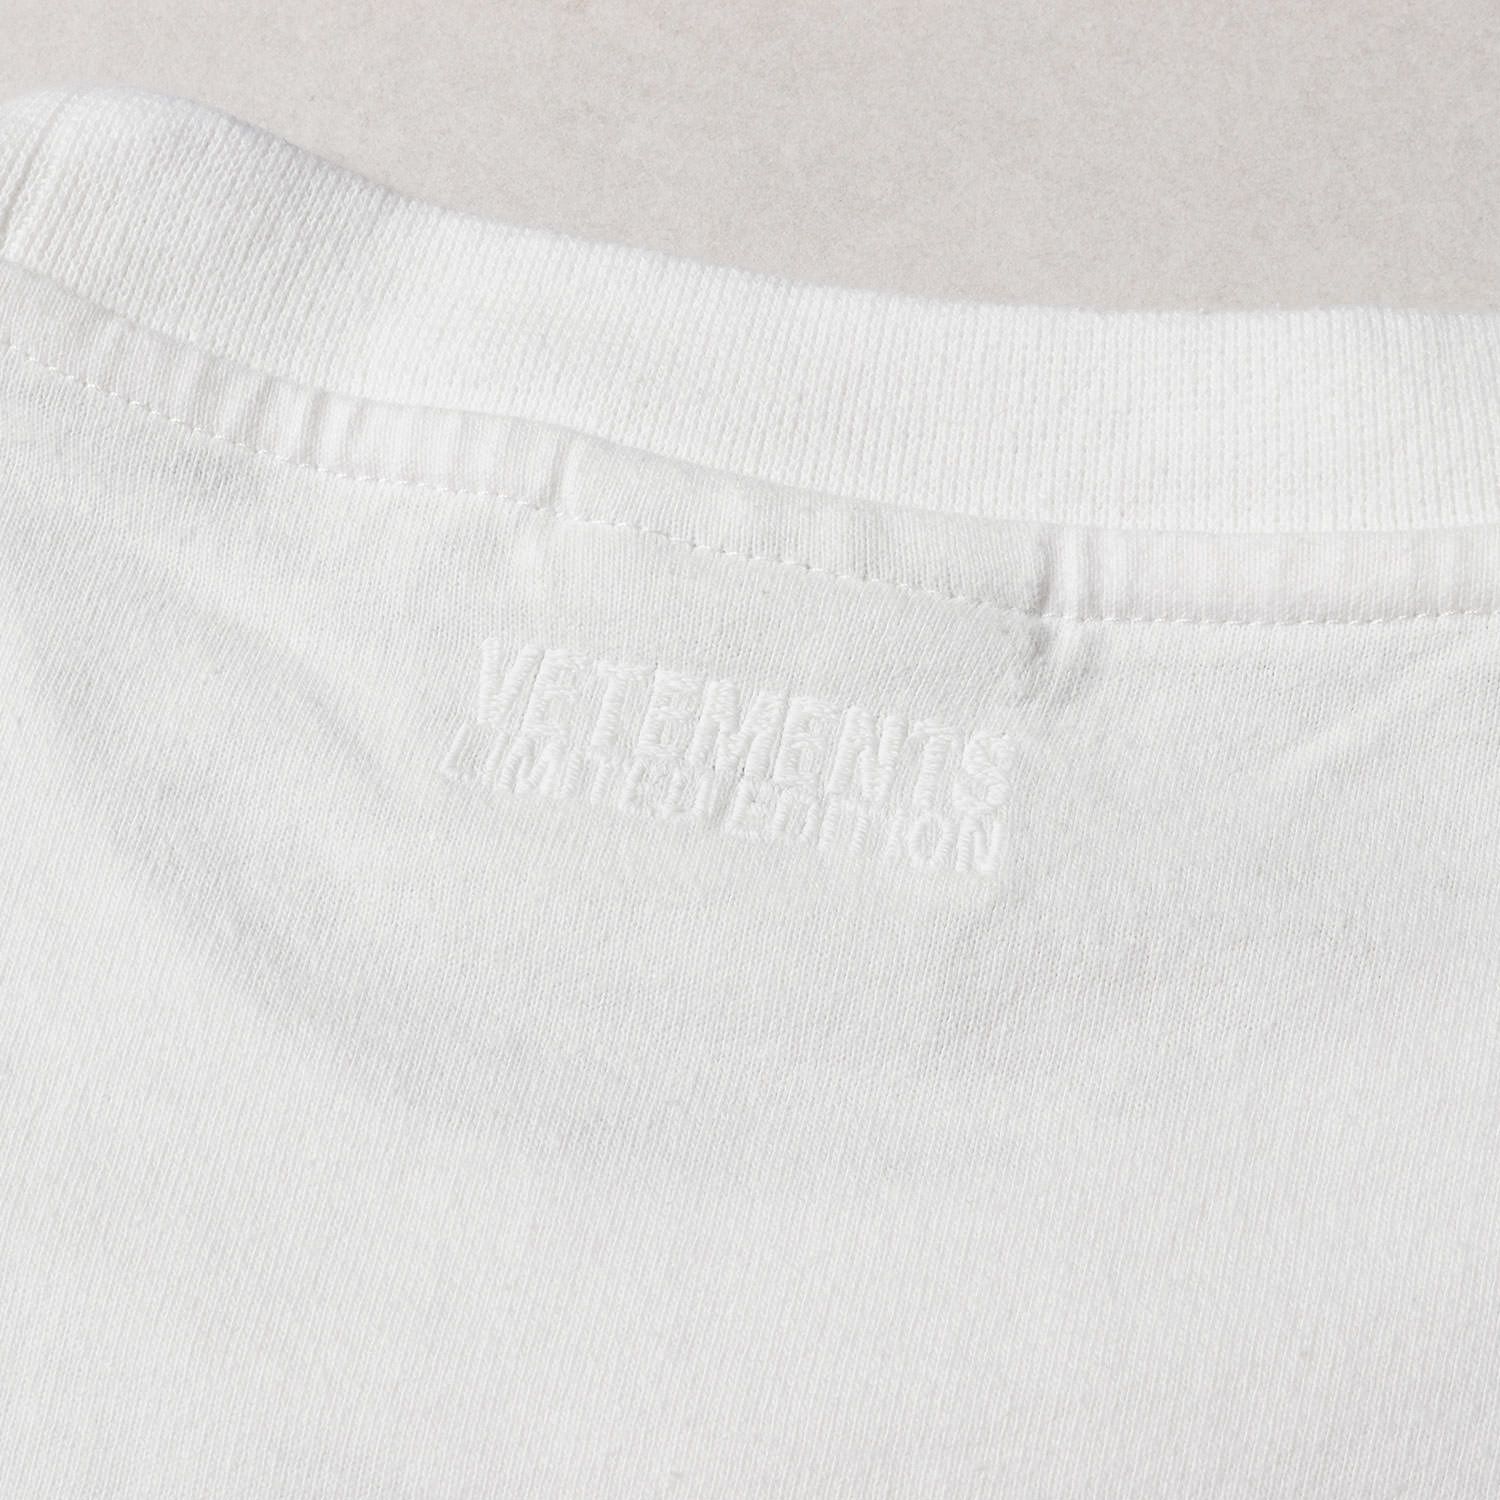 VETEMENTS ヴェトモン Tシャツ サイズ:M ブランドロゴ 半袖 Logo Limited Edition T-shirt 21SS ホワイト  白 トップス カットソー カジュアル ブランド ストリート シンプル ワンポイント